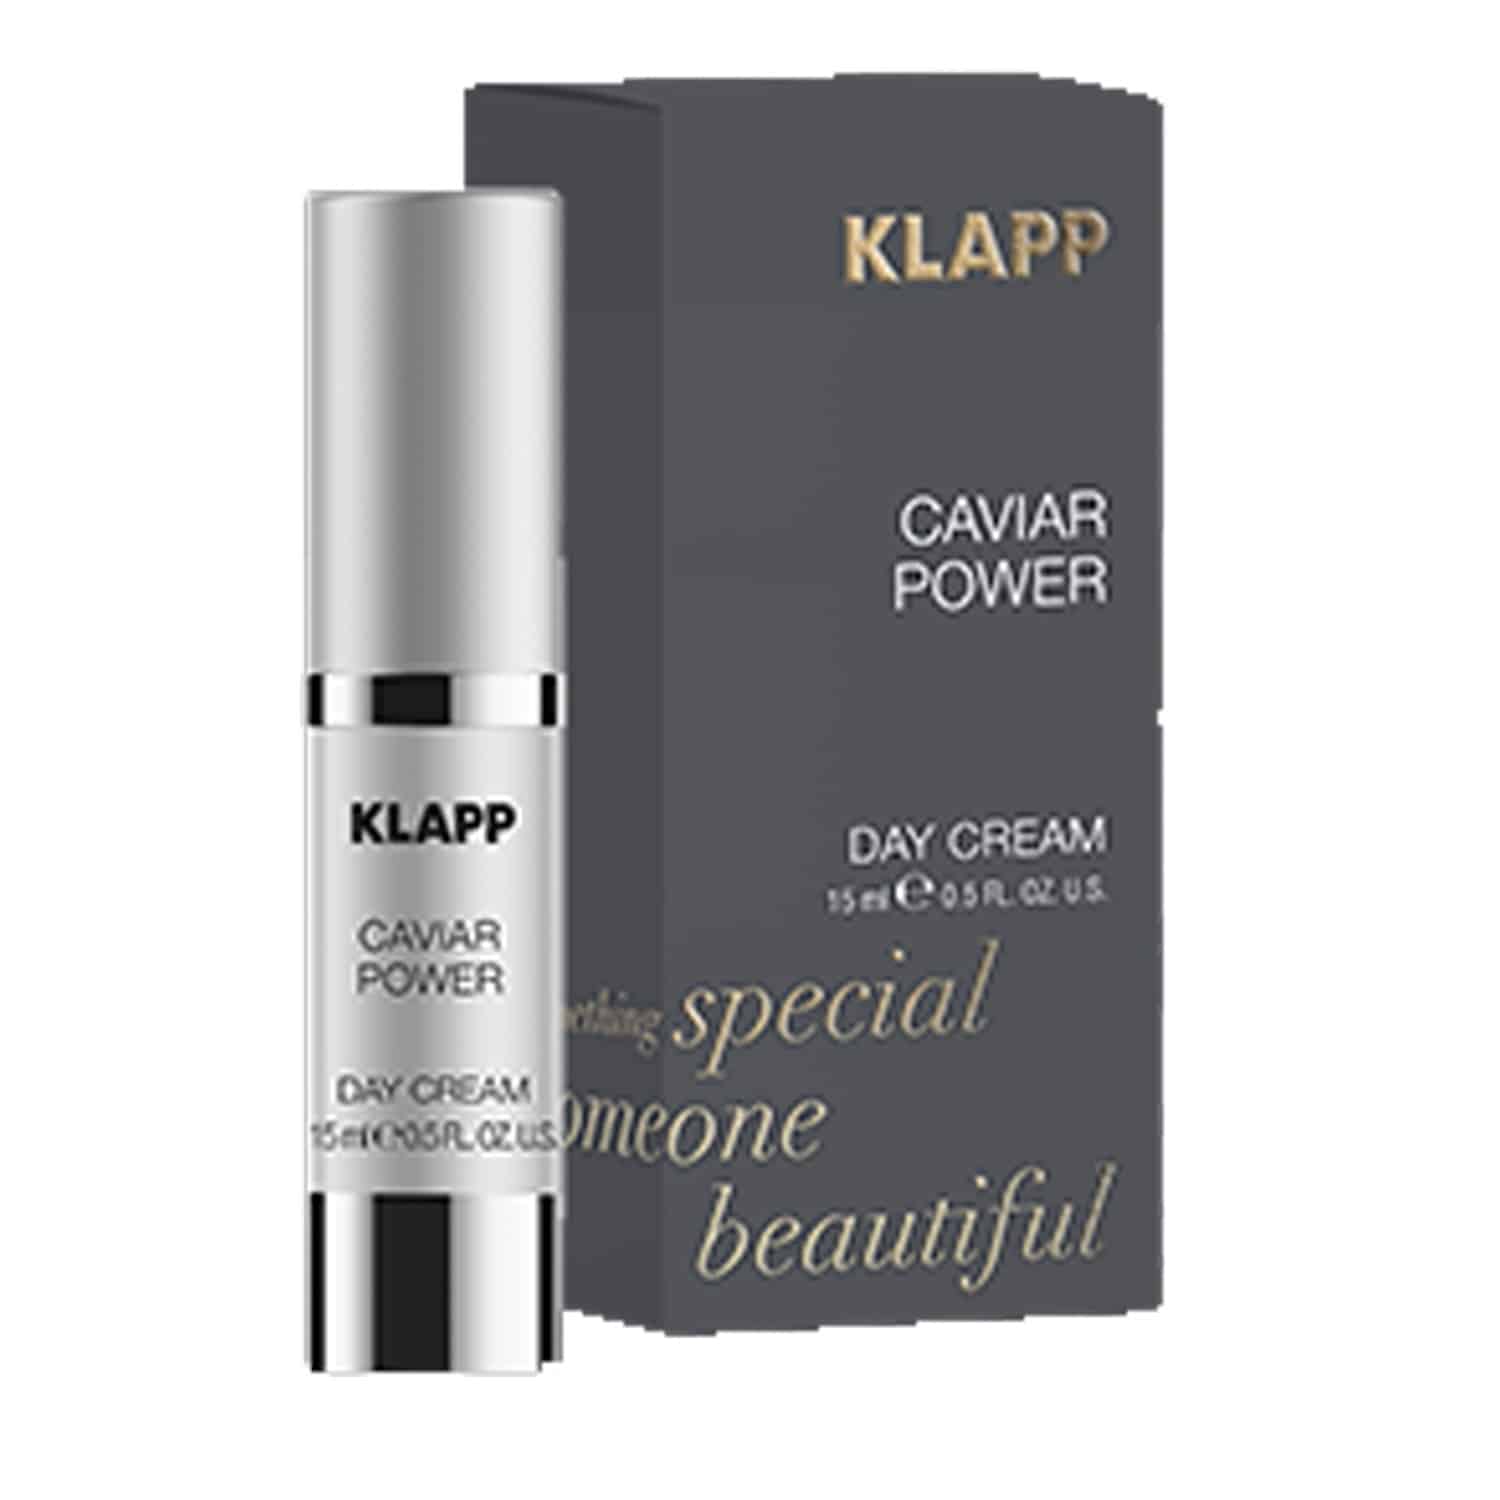 klapp-caviar-power-day-cream-15ml